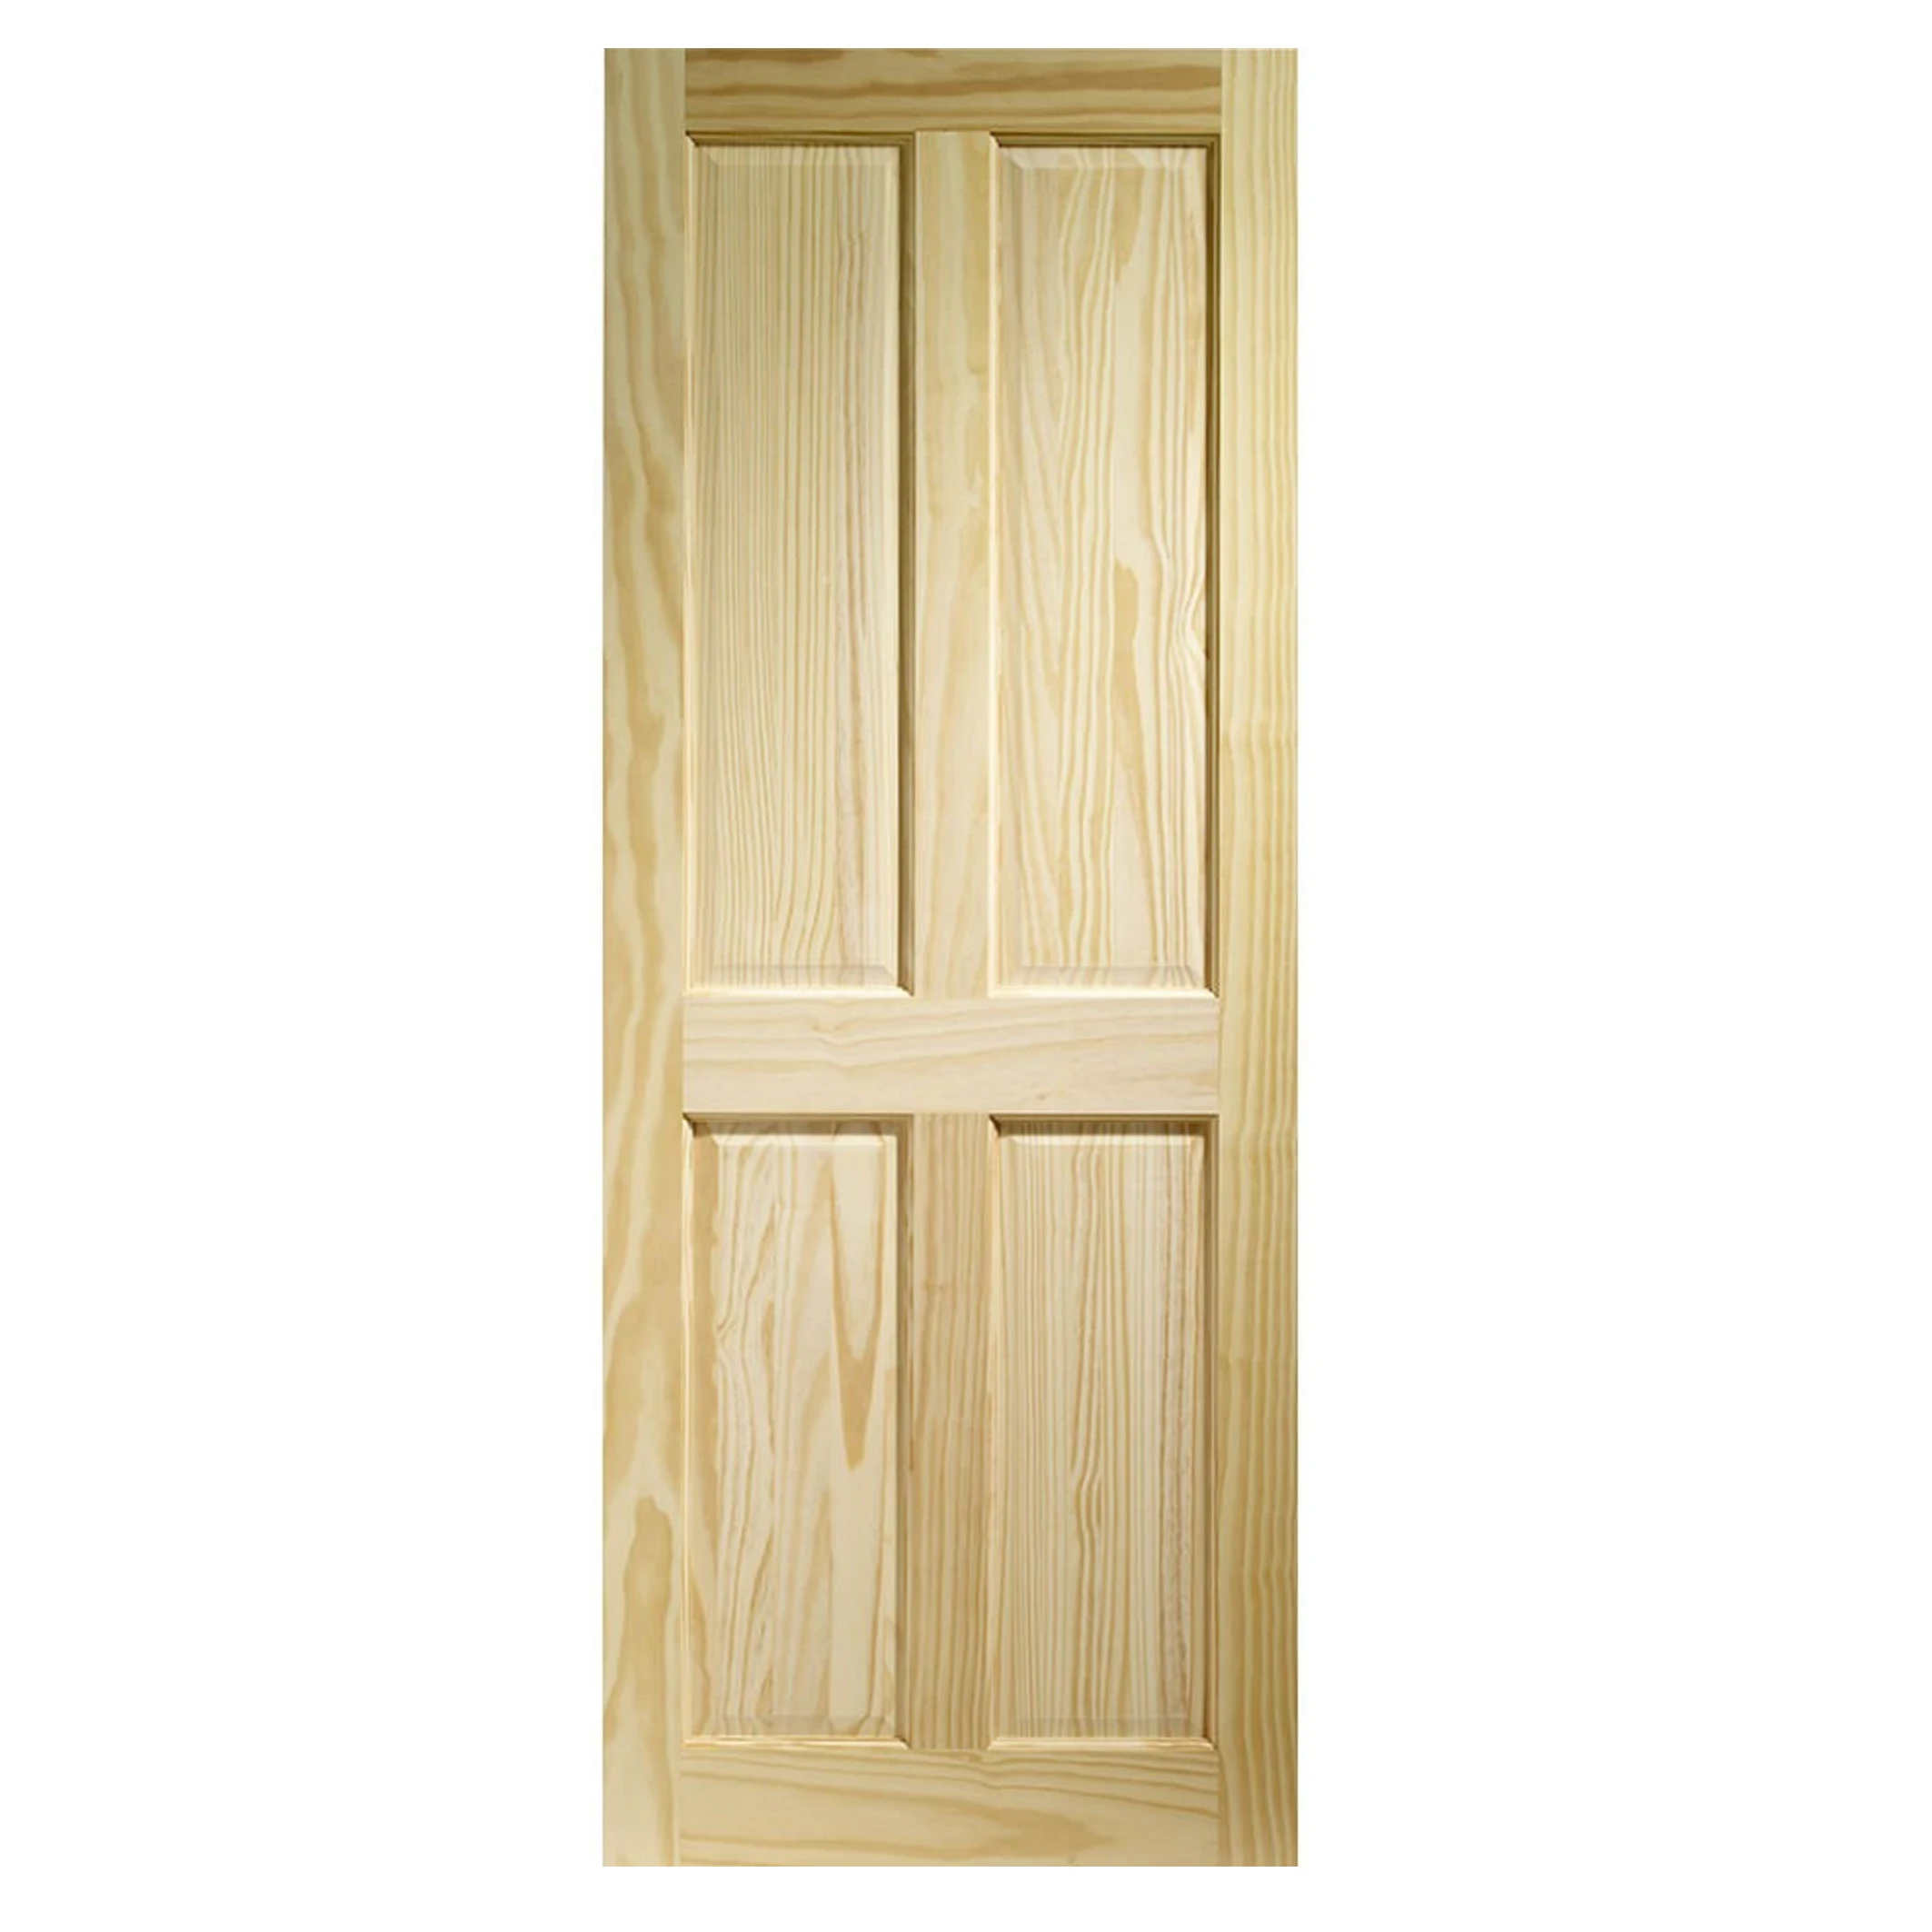 Двери межкомнатные деревянные неокрашенные